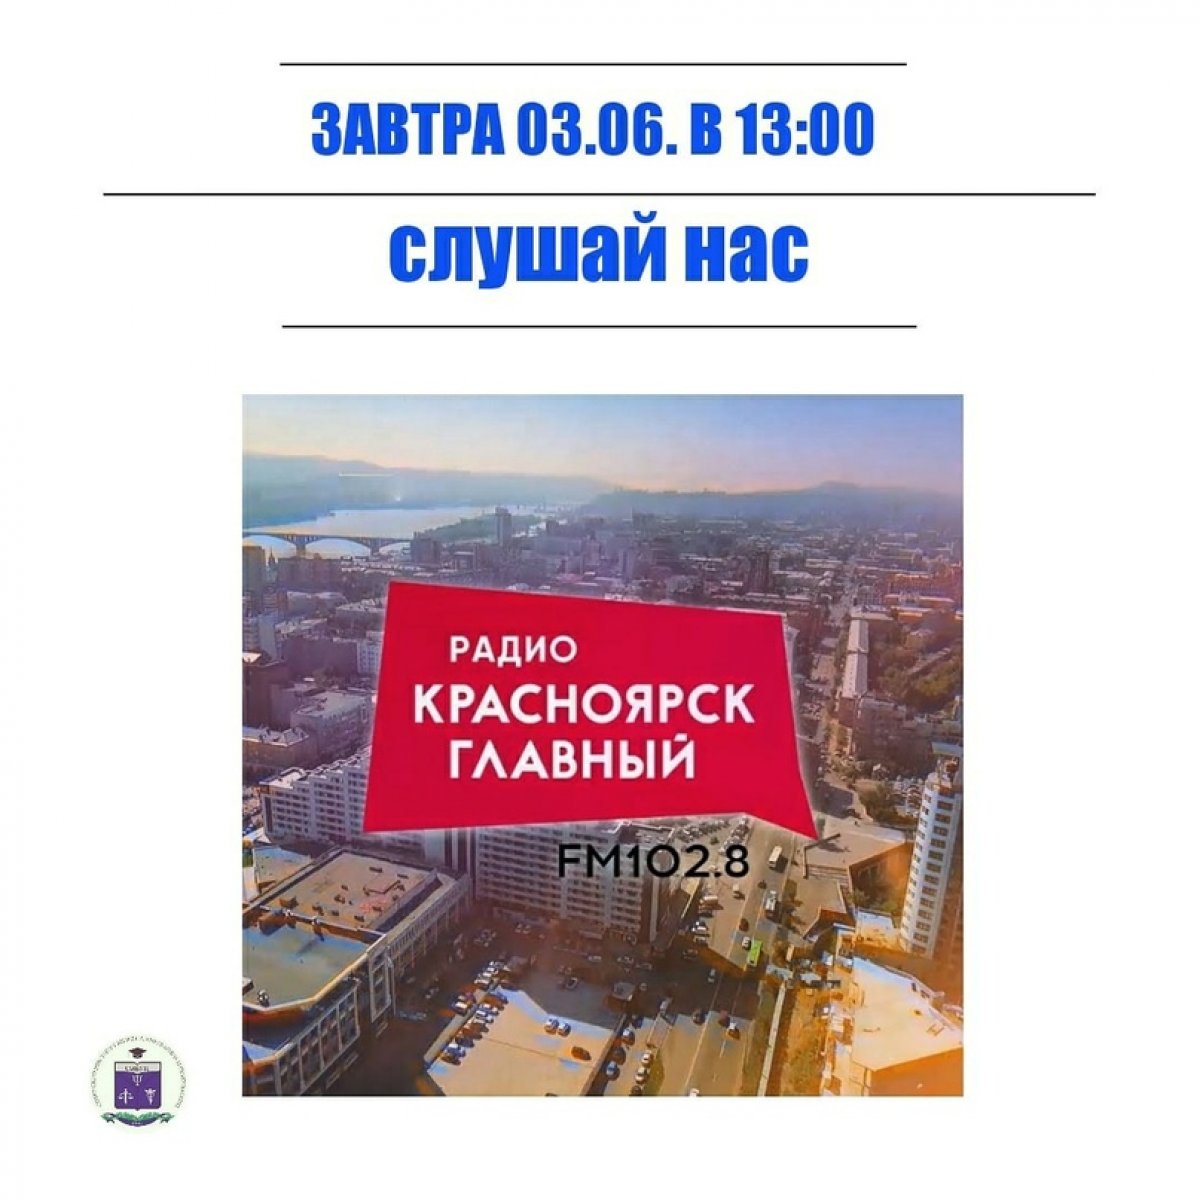 🔥Завтра в прямом эфире радио Красноярск главный, в передаче "Без обеда" будут обсуждаться вопросы приёмной комиссии!